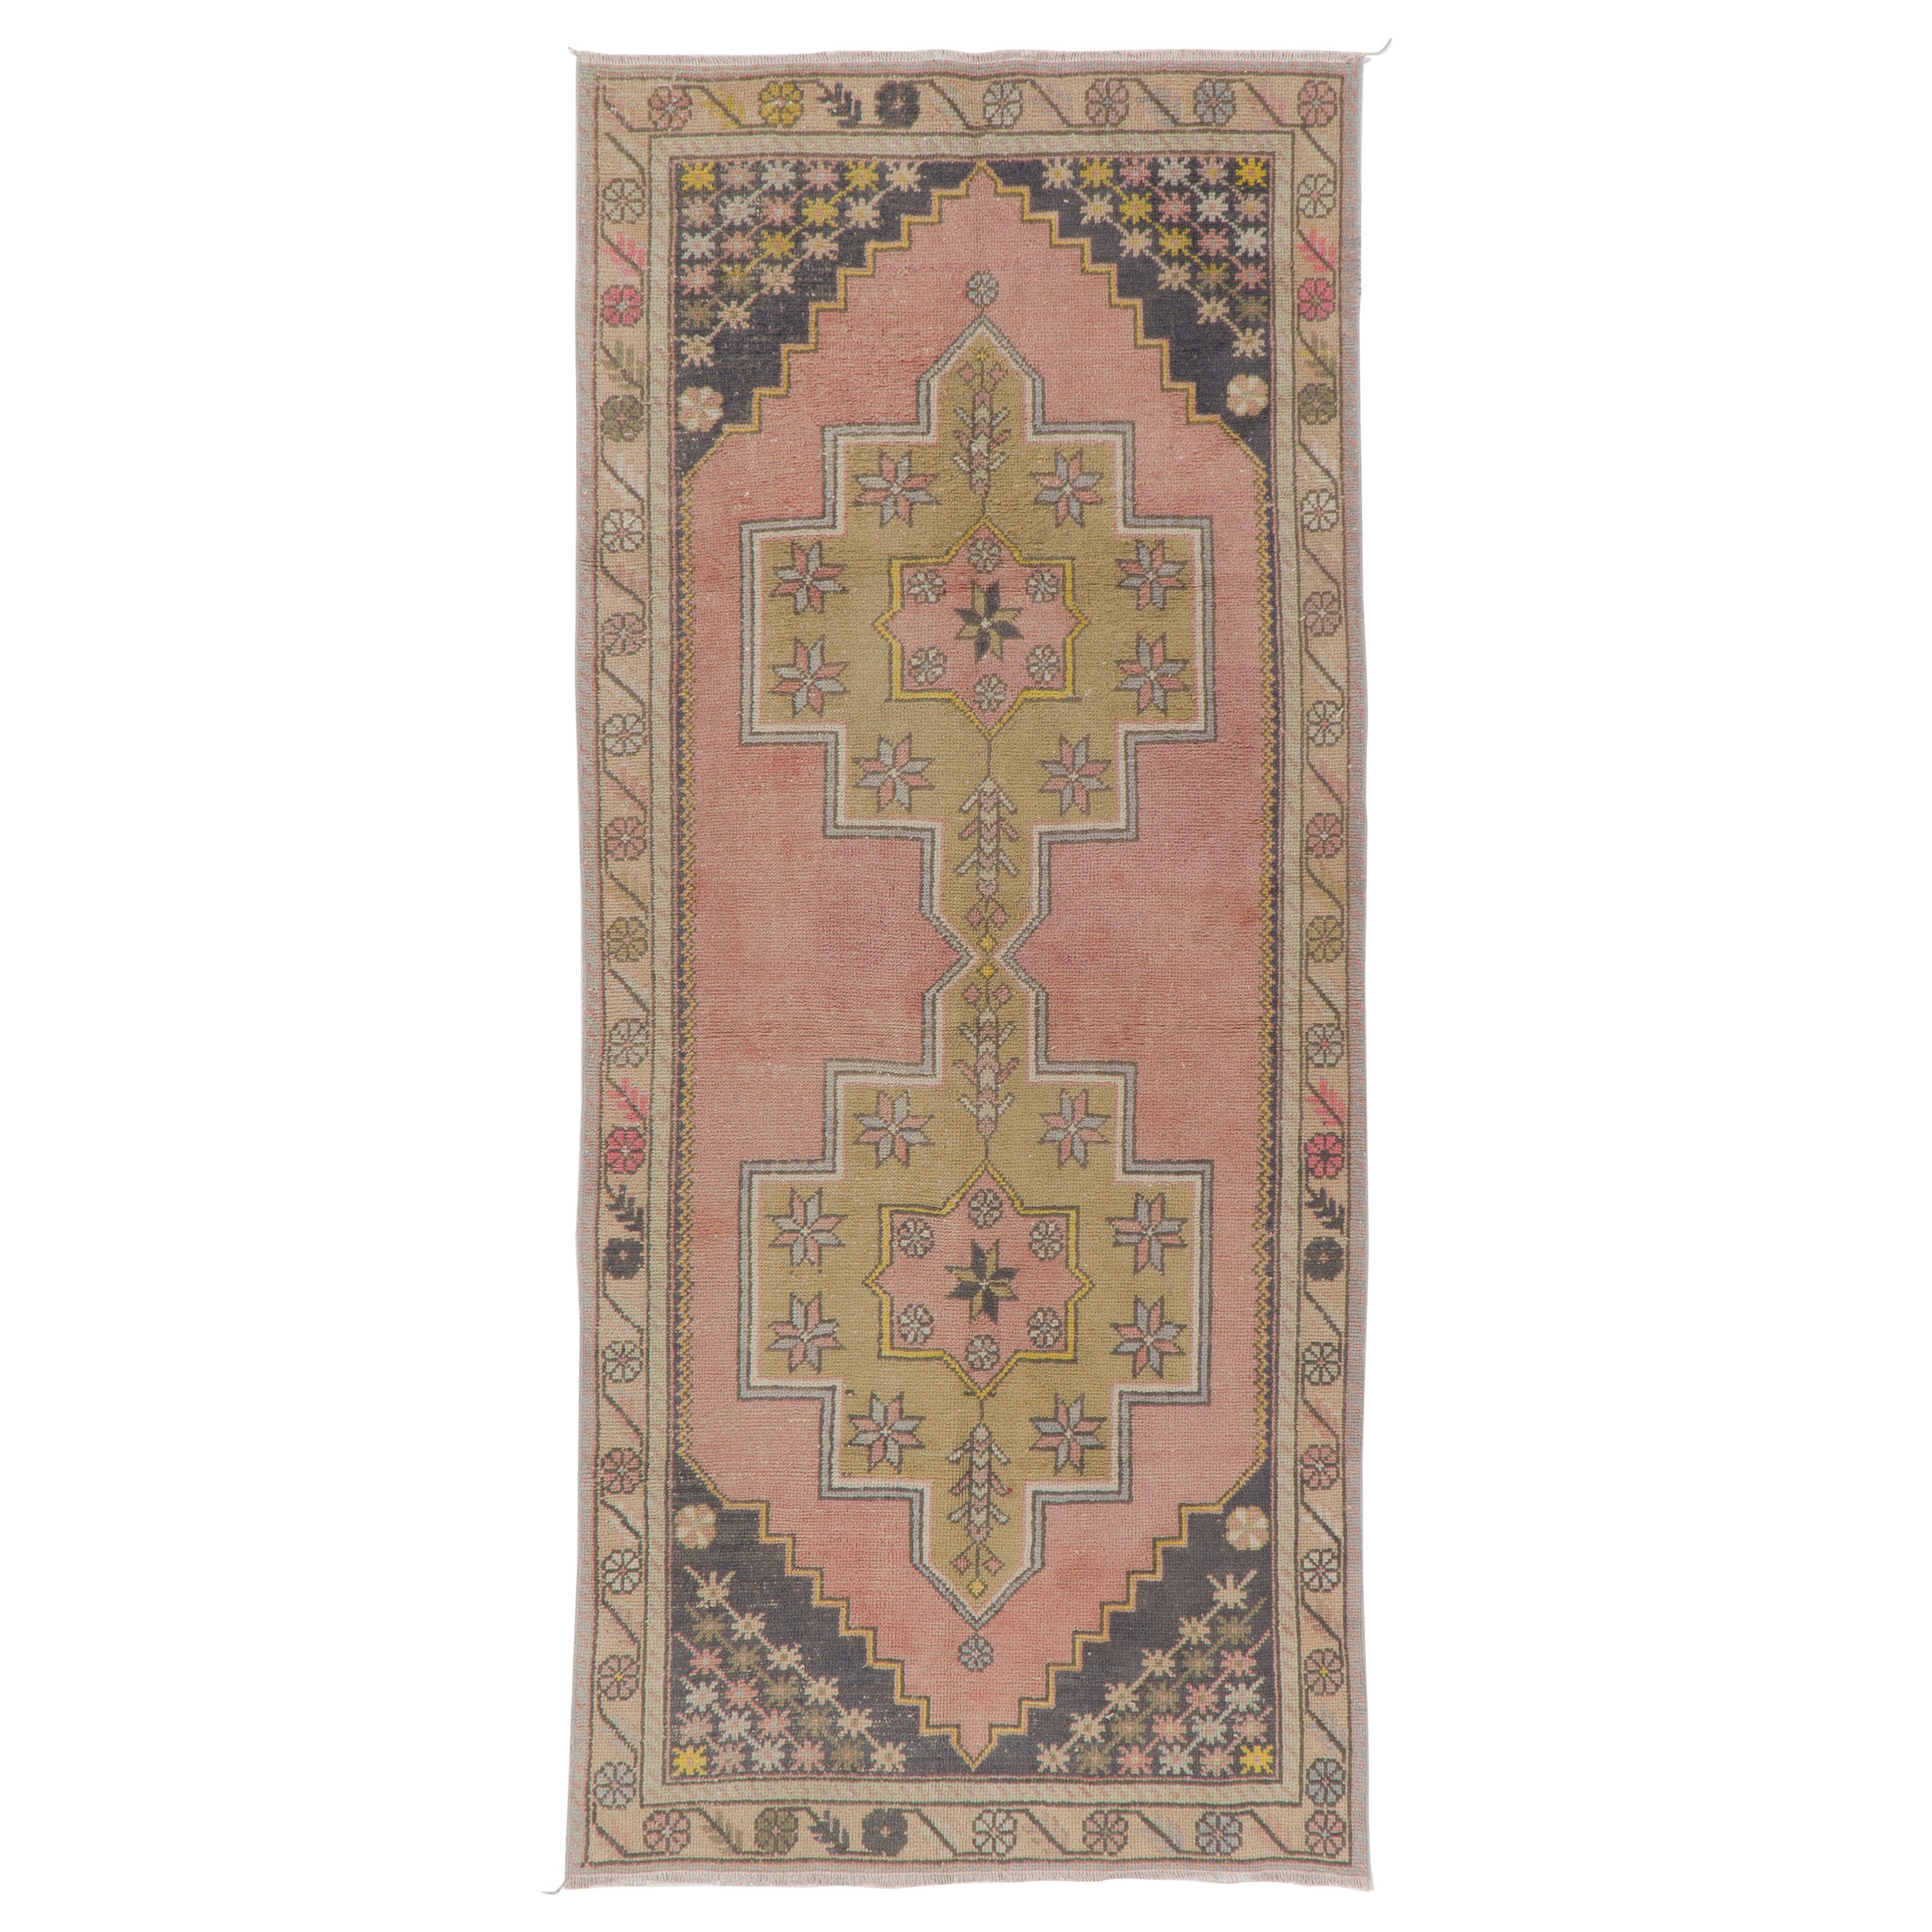 4'x9' handgeknüpfter türkischer Vintage-Teppich aus Wolle mit geometrischem Design in gedämpften Farben